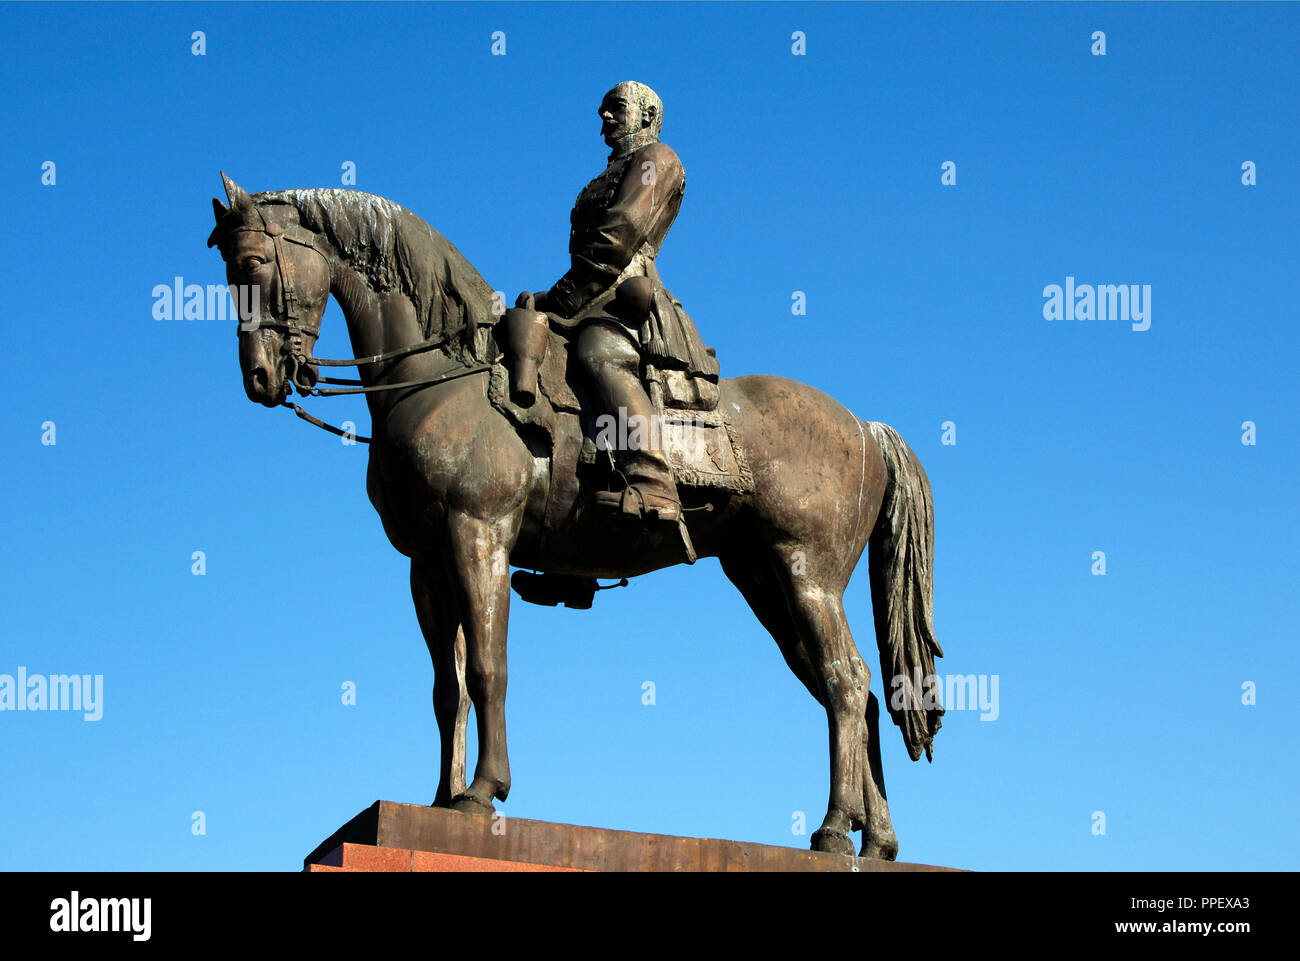 Gˆrgey, Artur (1818-1916). Ungarische Armee Offizier und Held der Ungarischen Revolution von 1848-1849. Reiterstatue. Budapest. Ungarn. Stockfoto